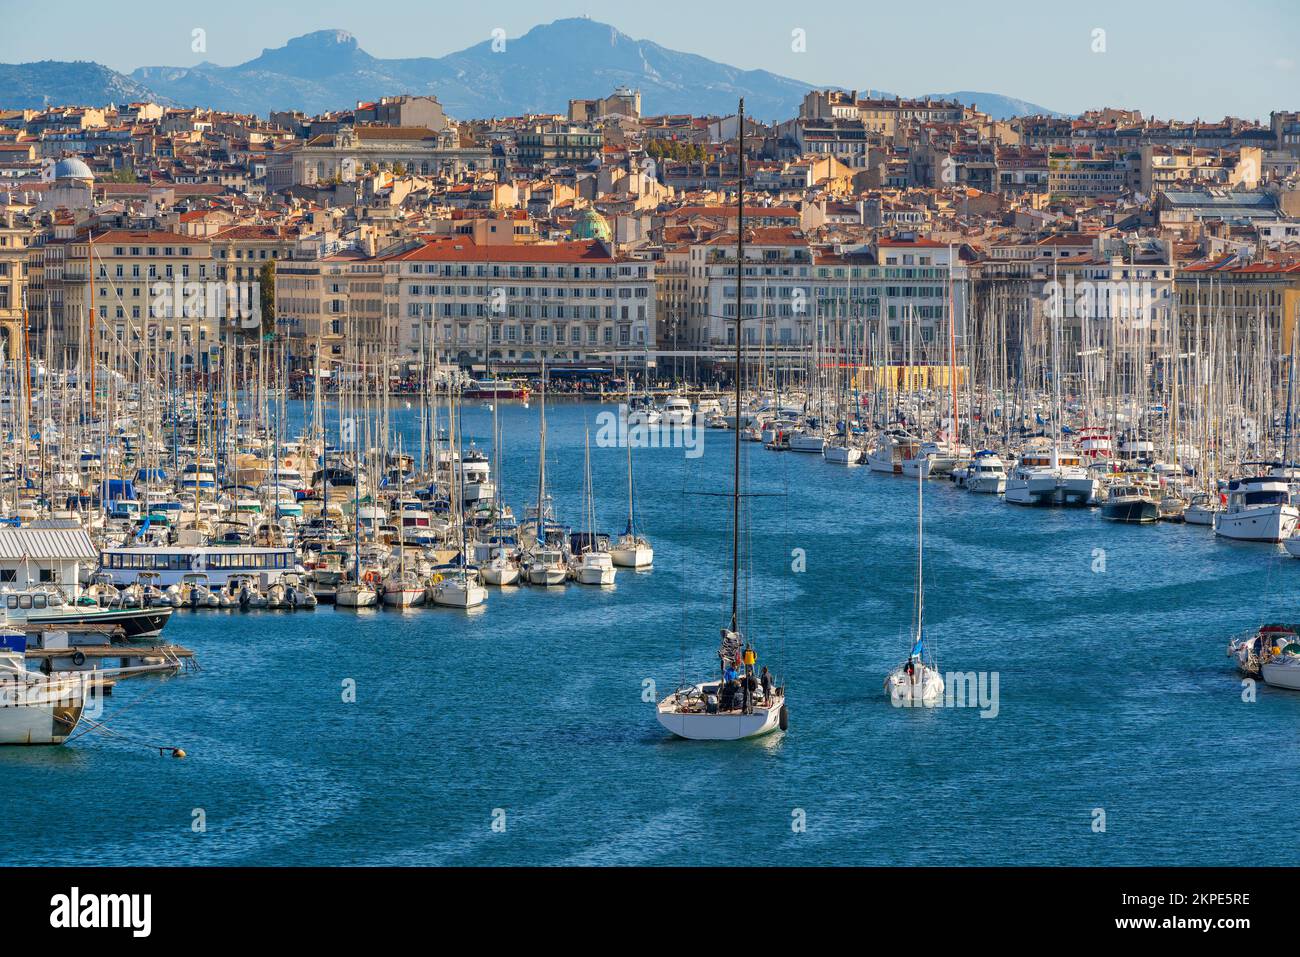 Le port de Marseille avec vue sur l'ancien port maritime méditerranéen et les bâtiments du 1st arrondissement. Bouches-du-Rhône, région PACA, France Banque D'Images